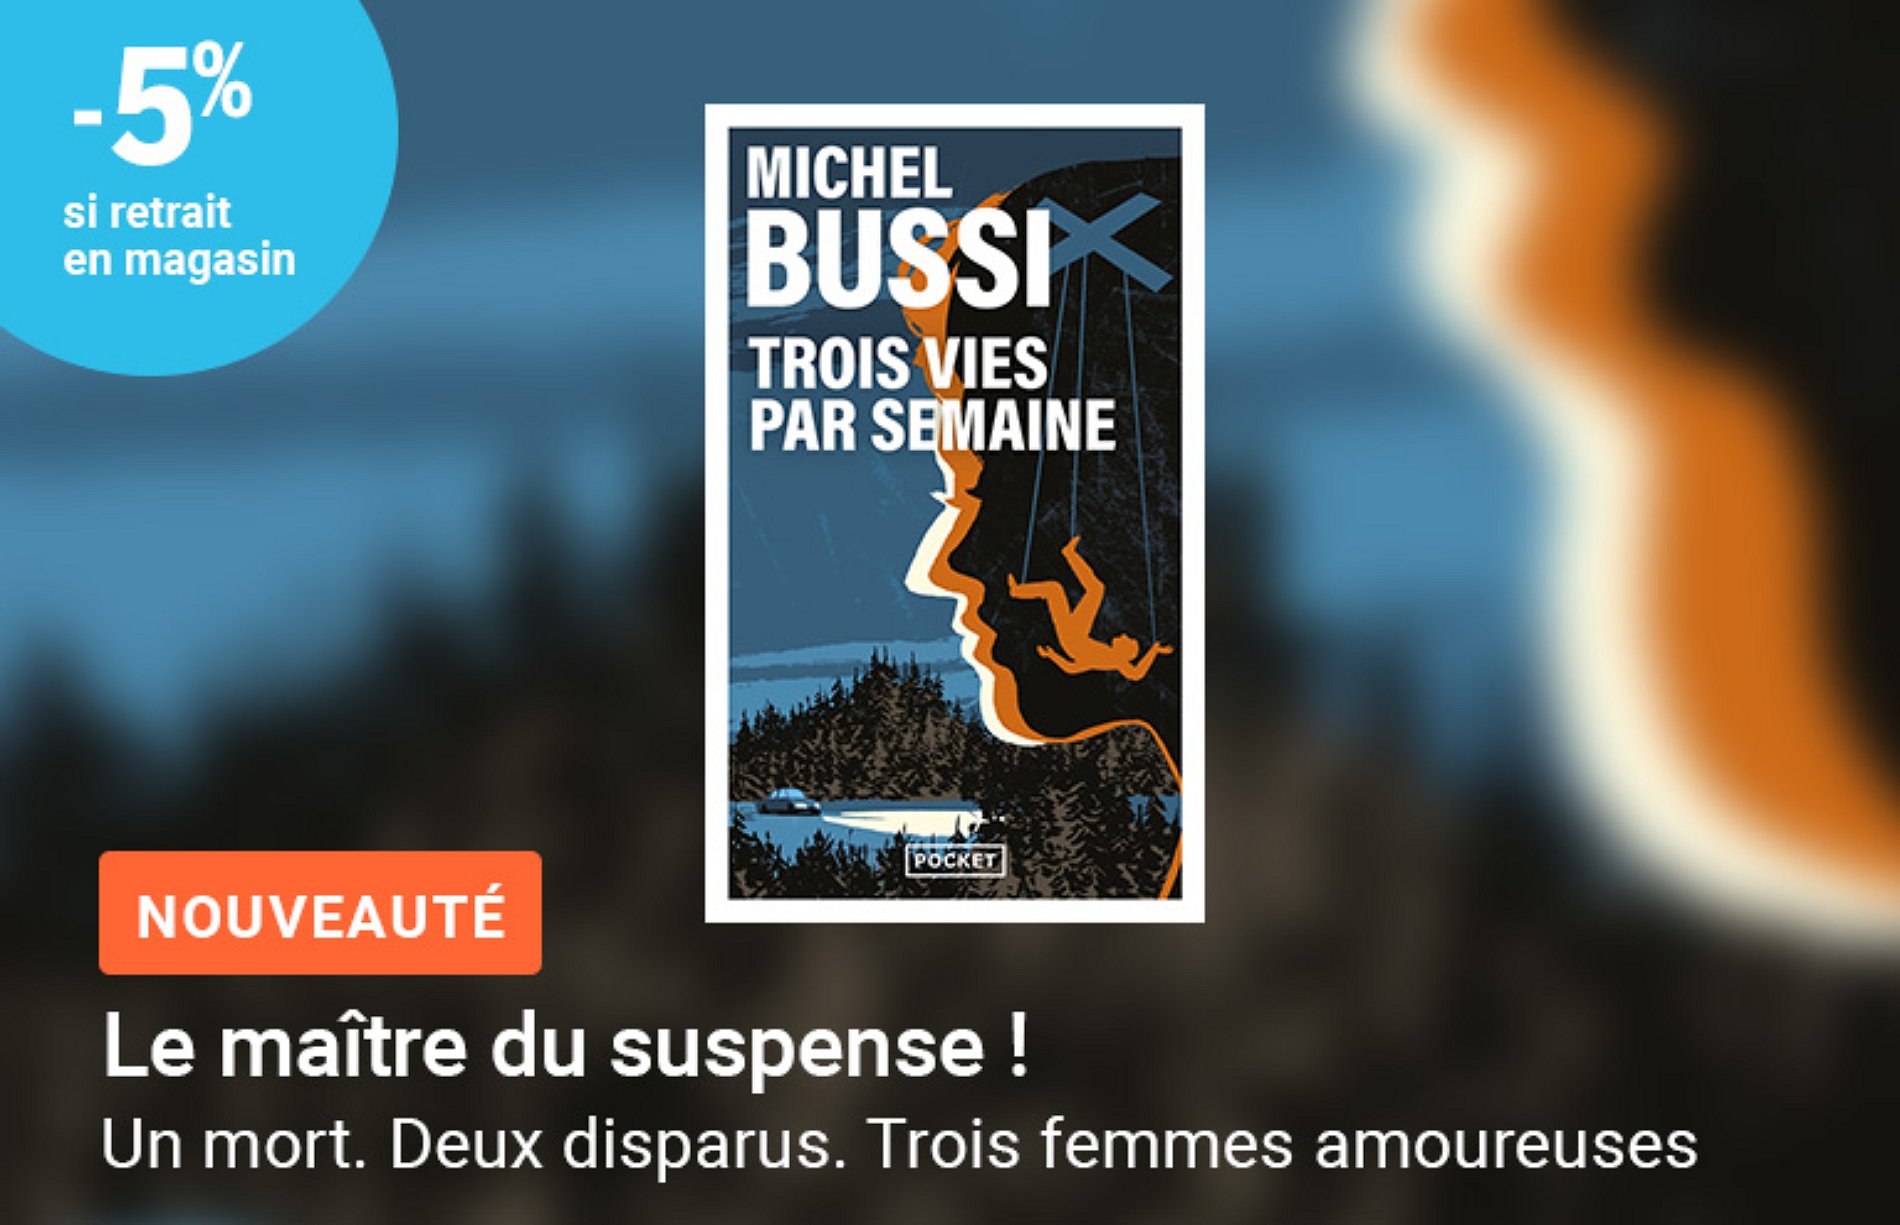 Michel Bussi au meilleur prix